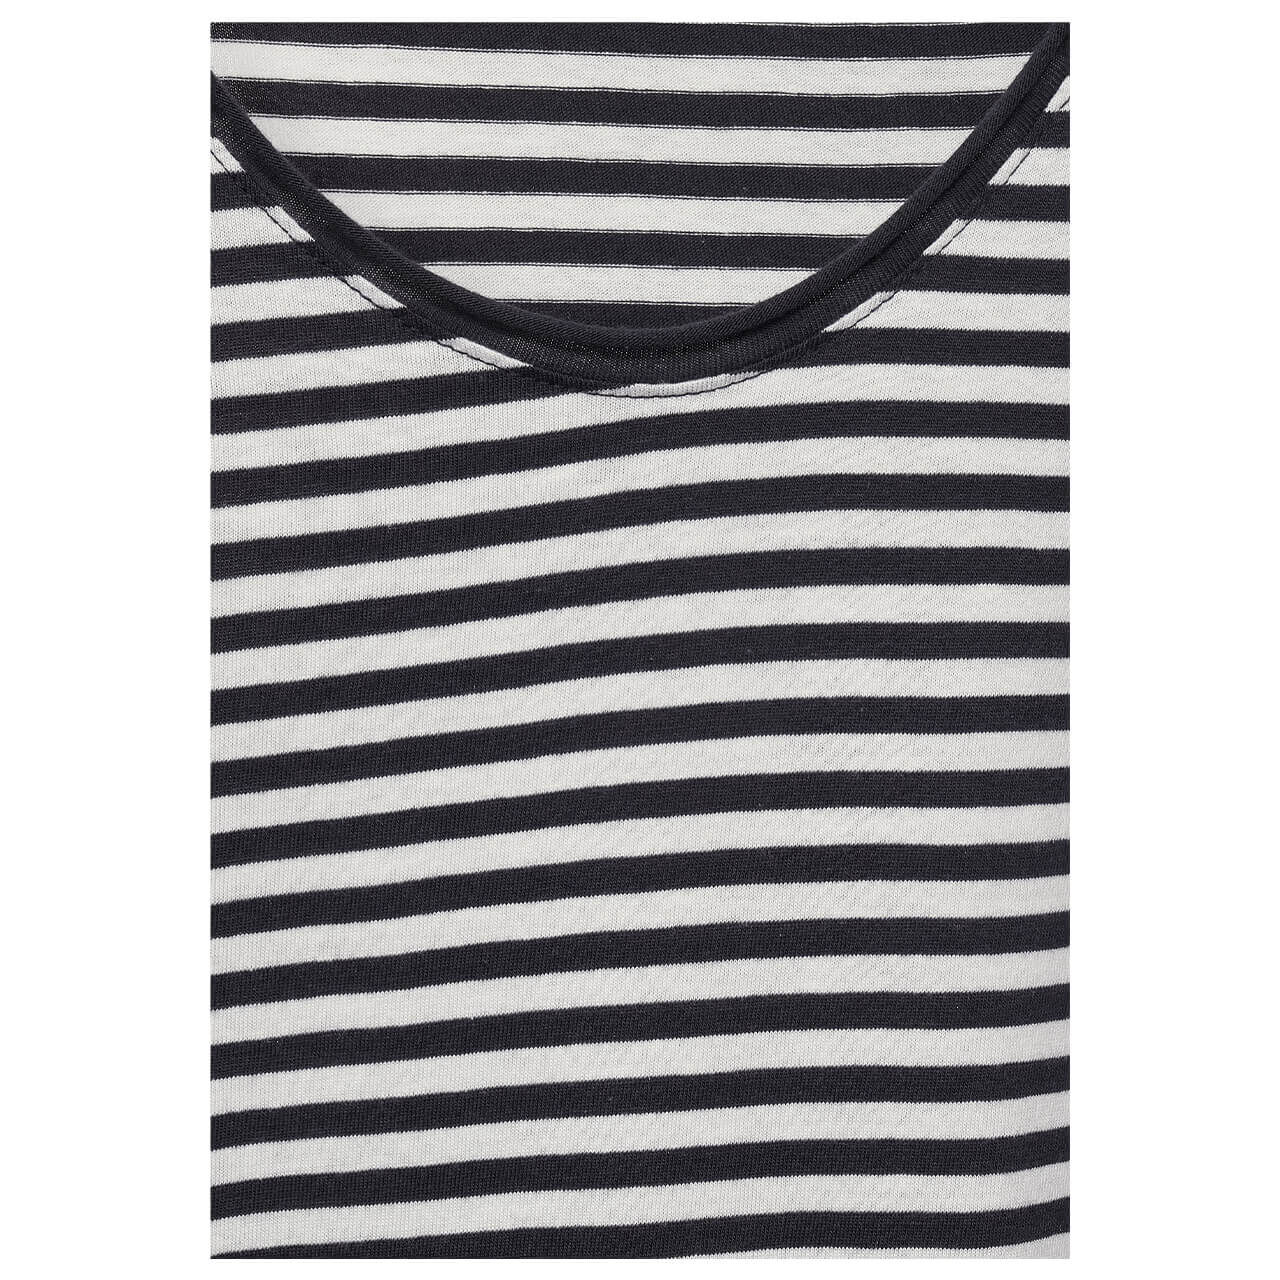 Cecil Striped Rounded V-Neck T-Shirt für Damen in Dunkelgrau gestreift, FarbNr.: 22538